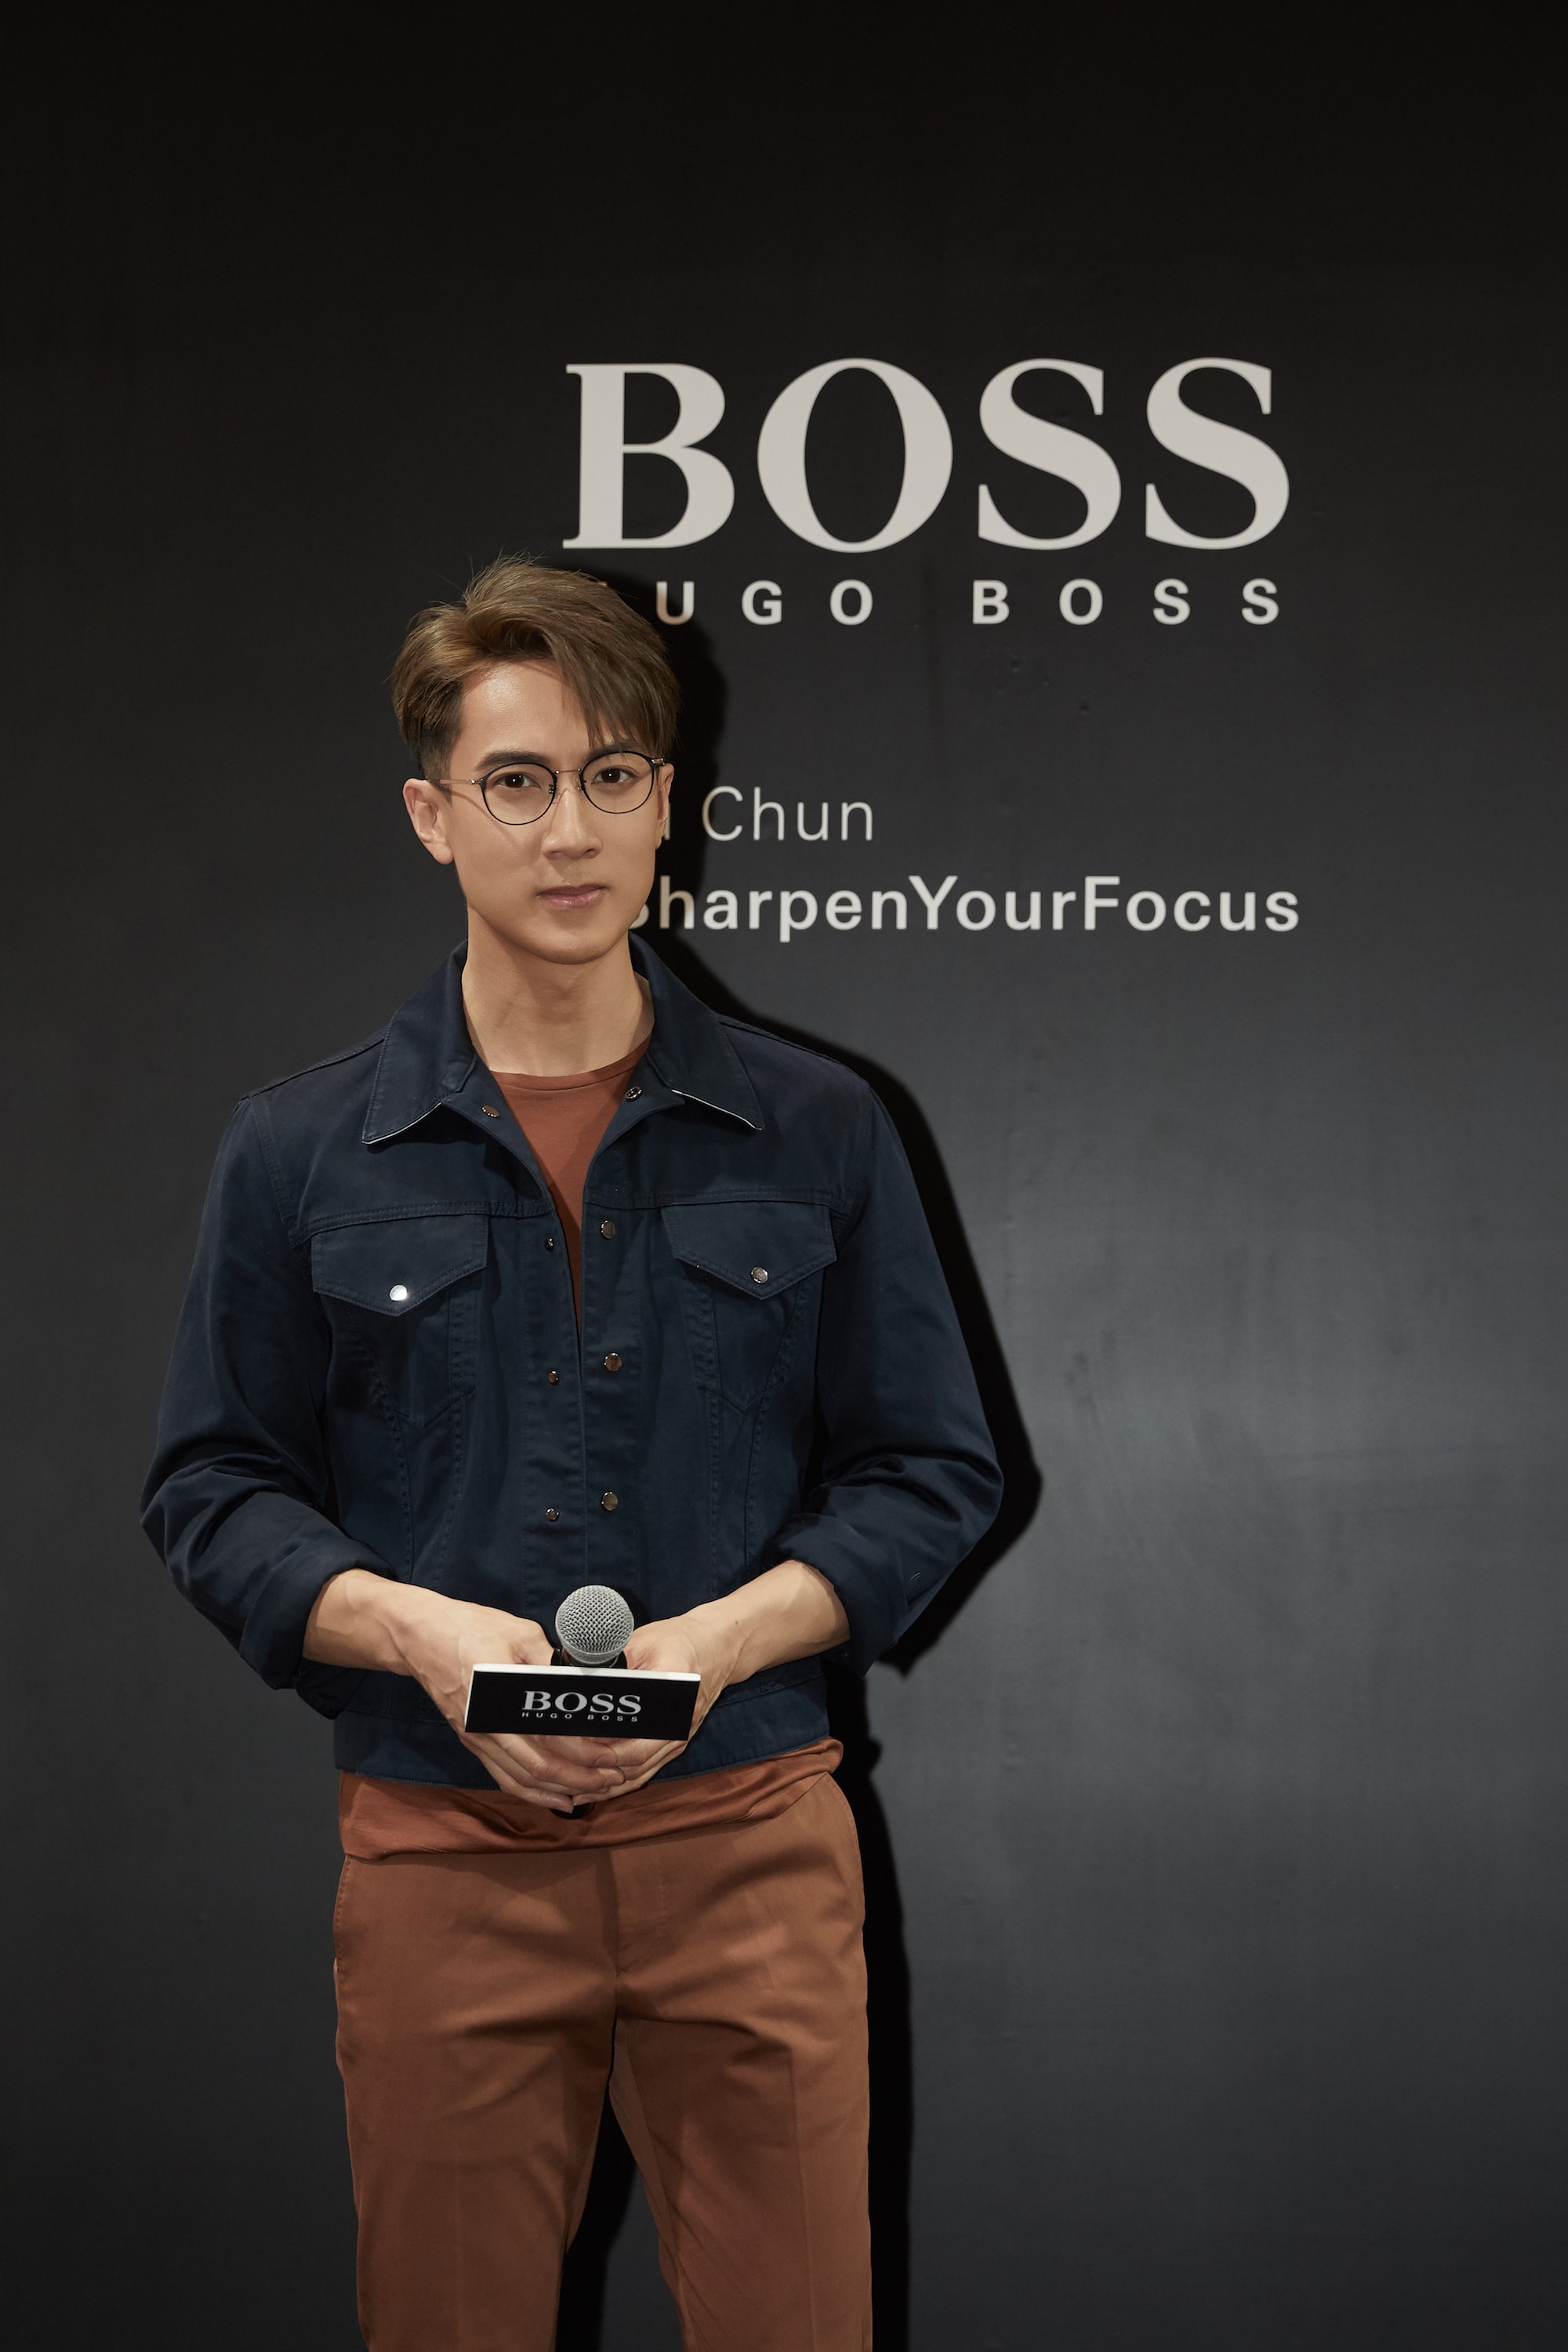 BOSS 眼鏡宣佈吳尊成為亞太區代言人